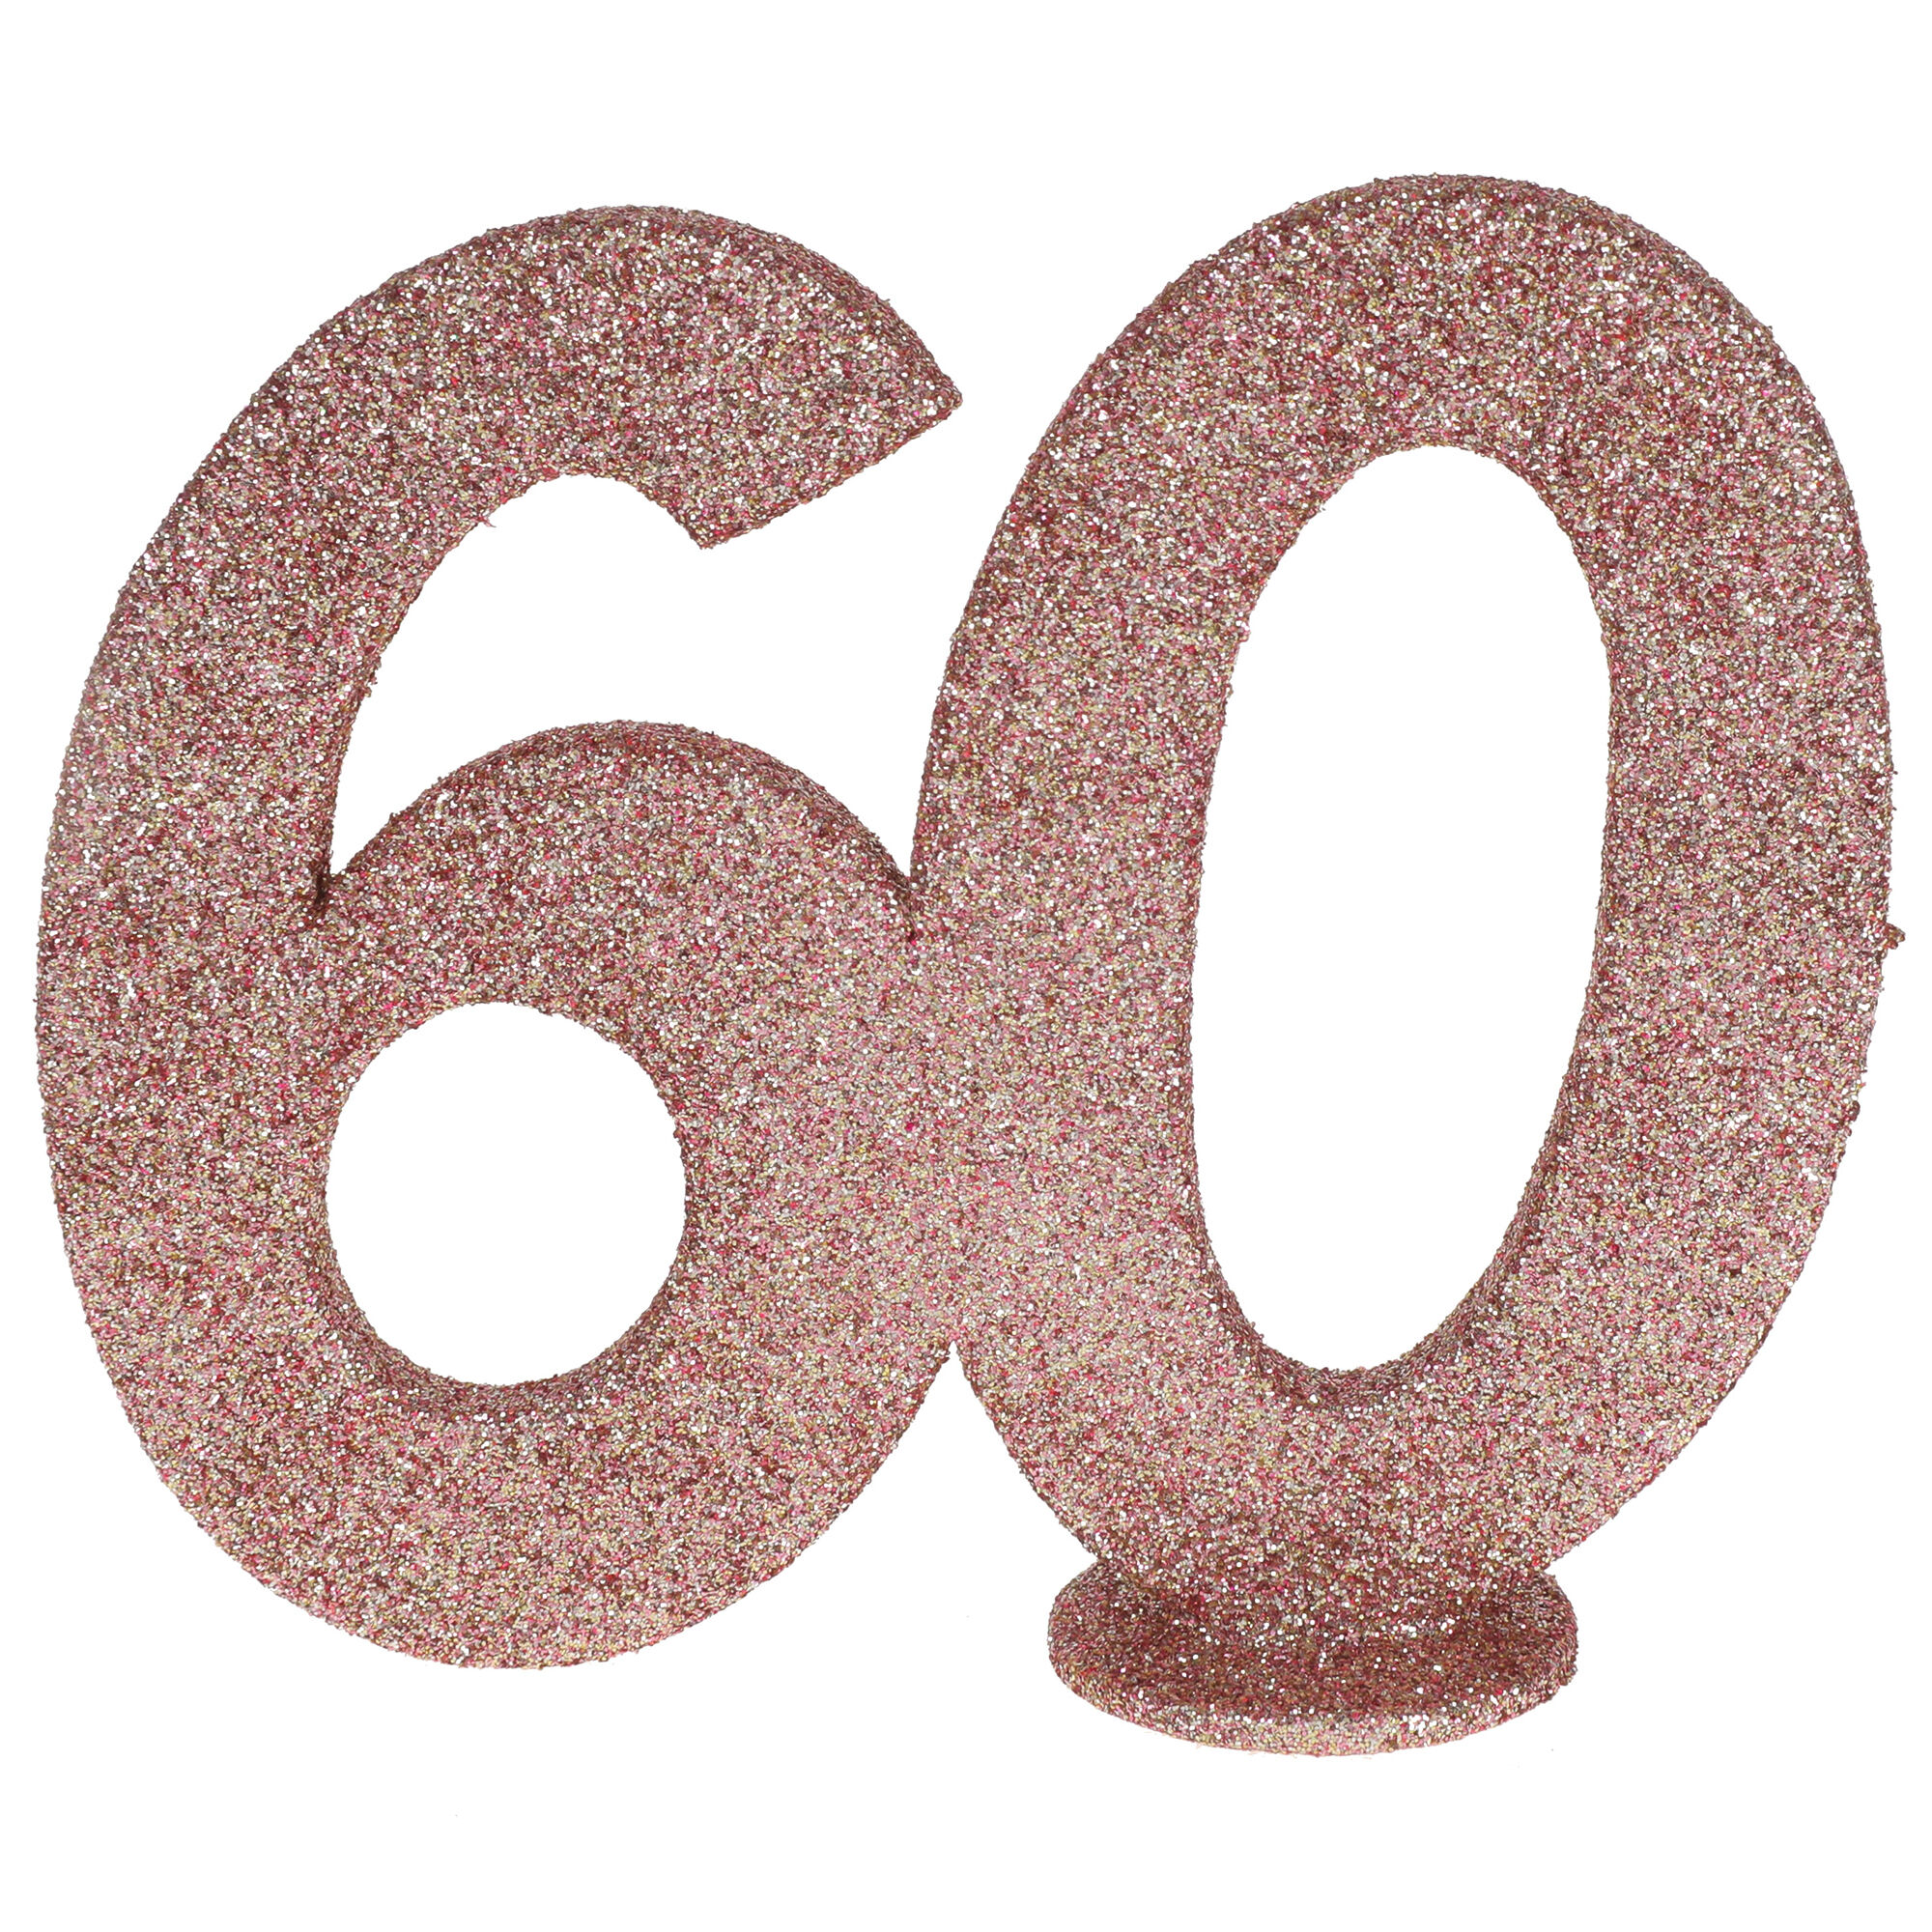 NEU Aufsteller Geburtstags-Zahl 60, glitter-ros-gold, ca. 10cm